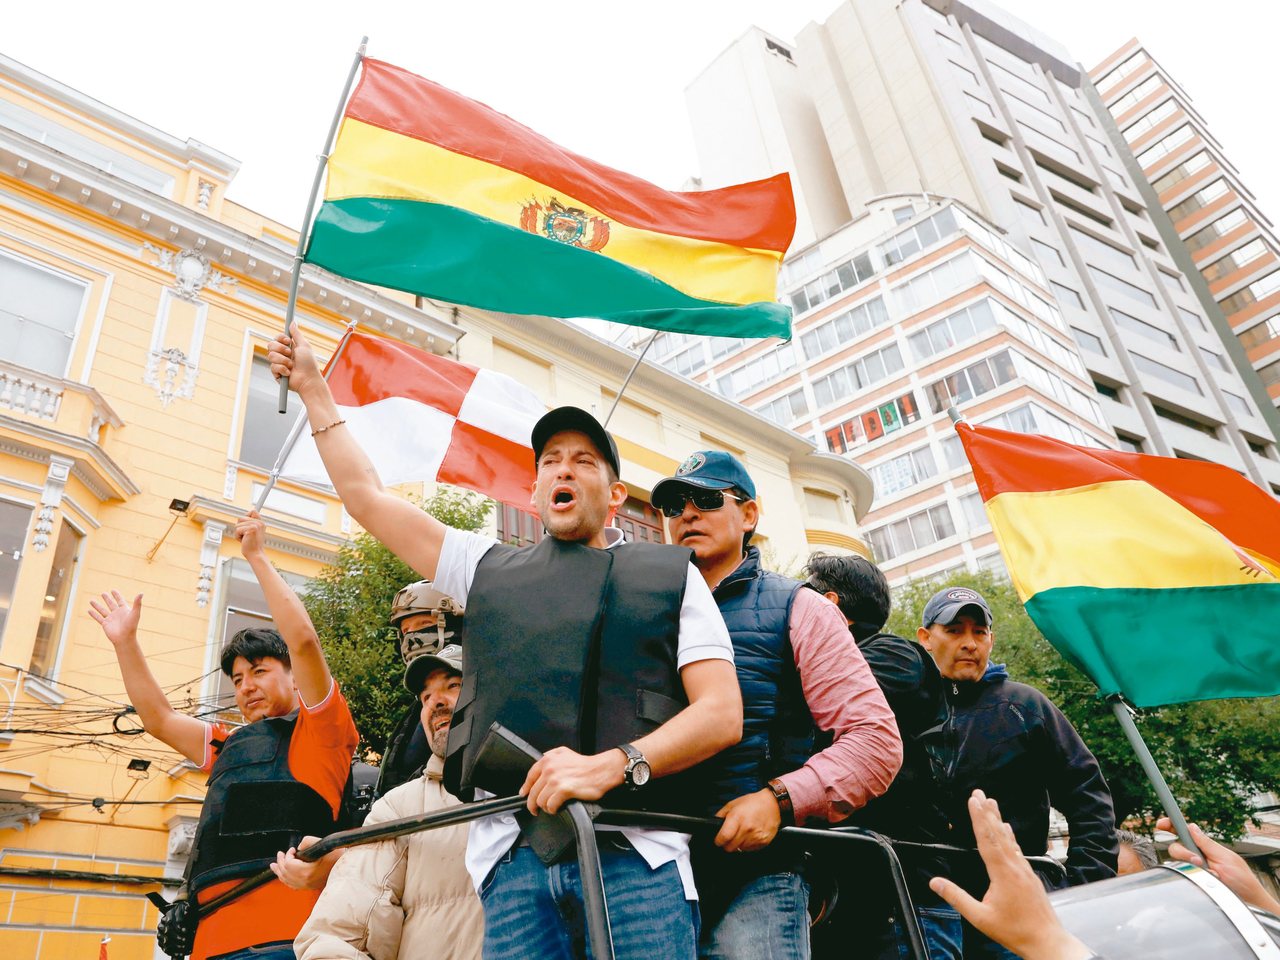 玻利維亞反對派領袖在警車上與支持者打招呼。 路透